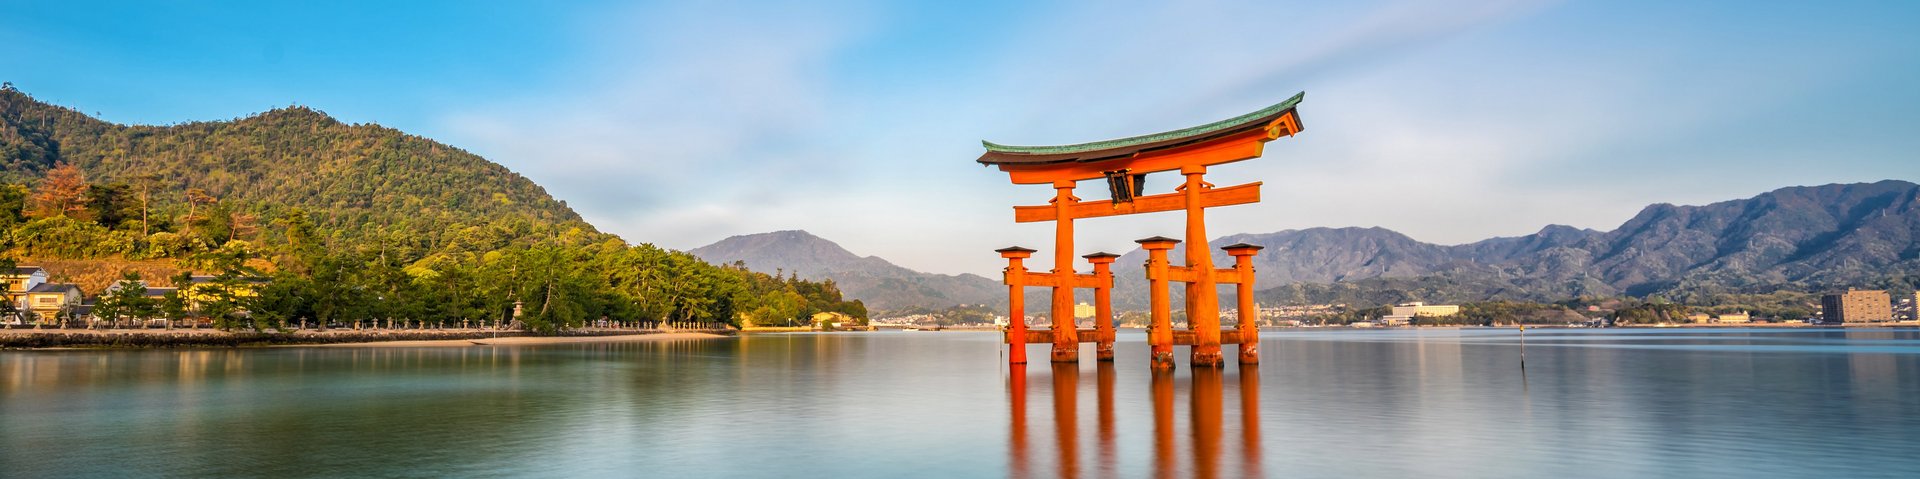 Der berühmte schwimmende Torii auf der Insel Miyajima in Japan